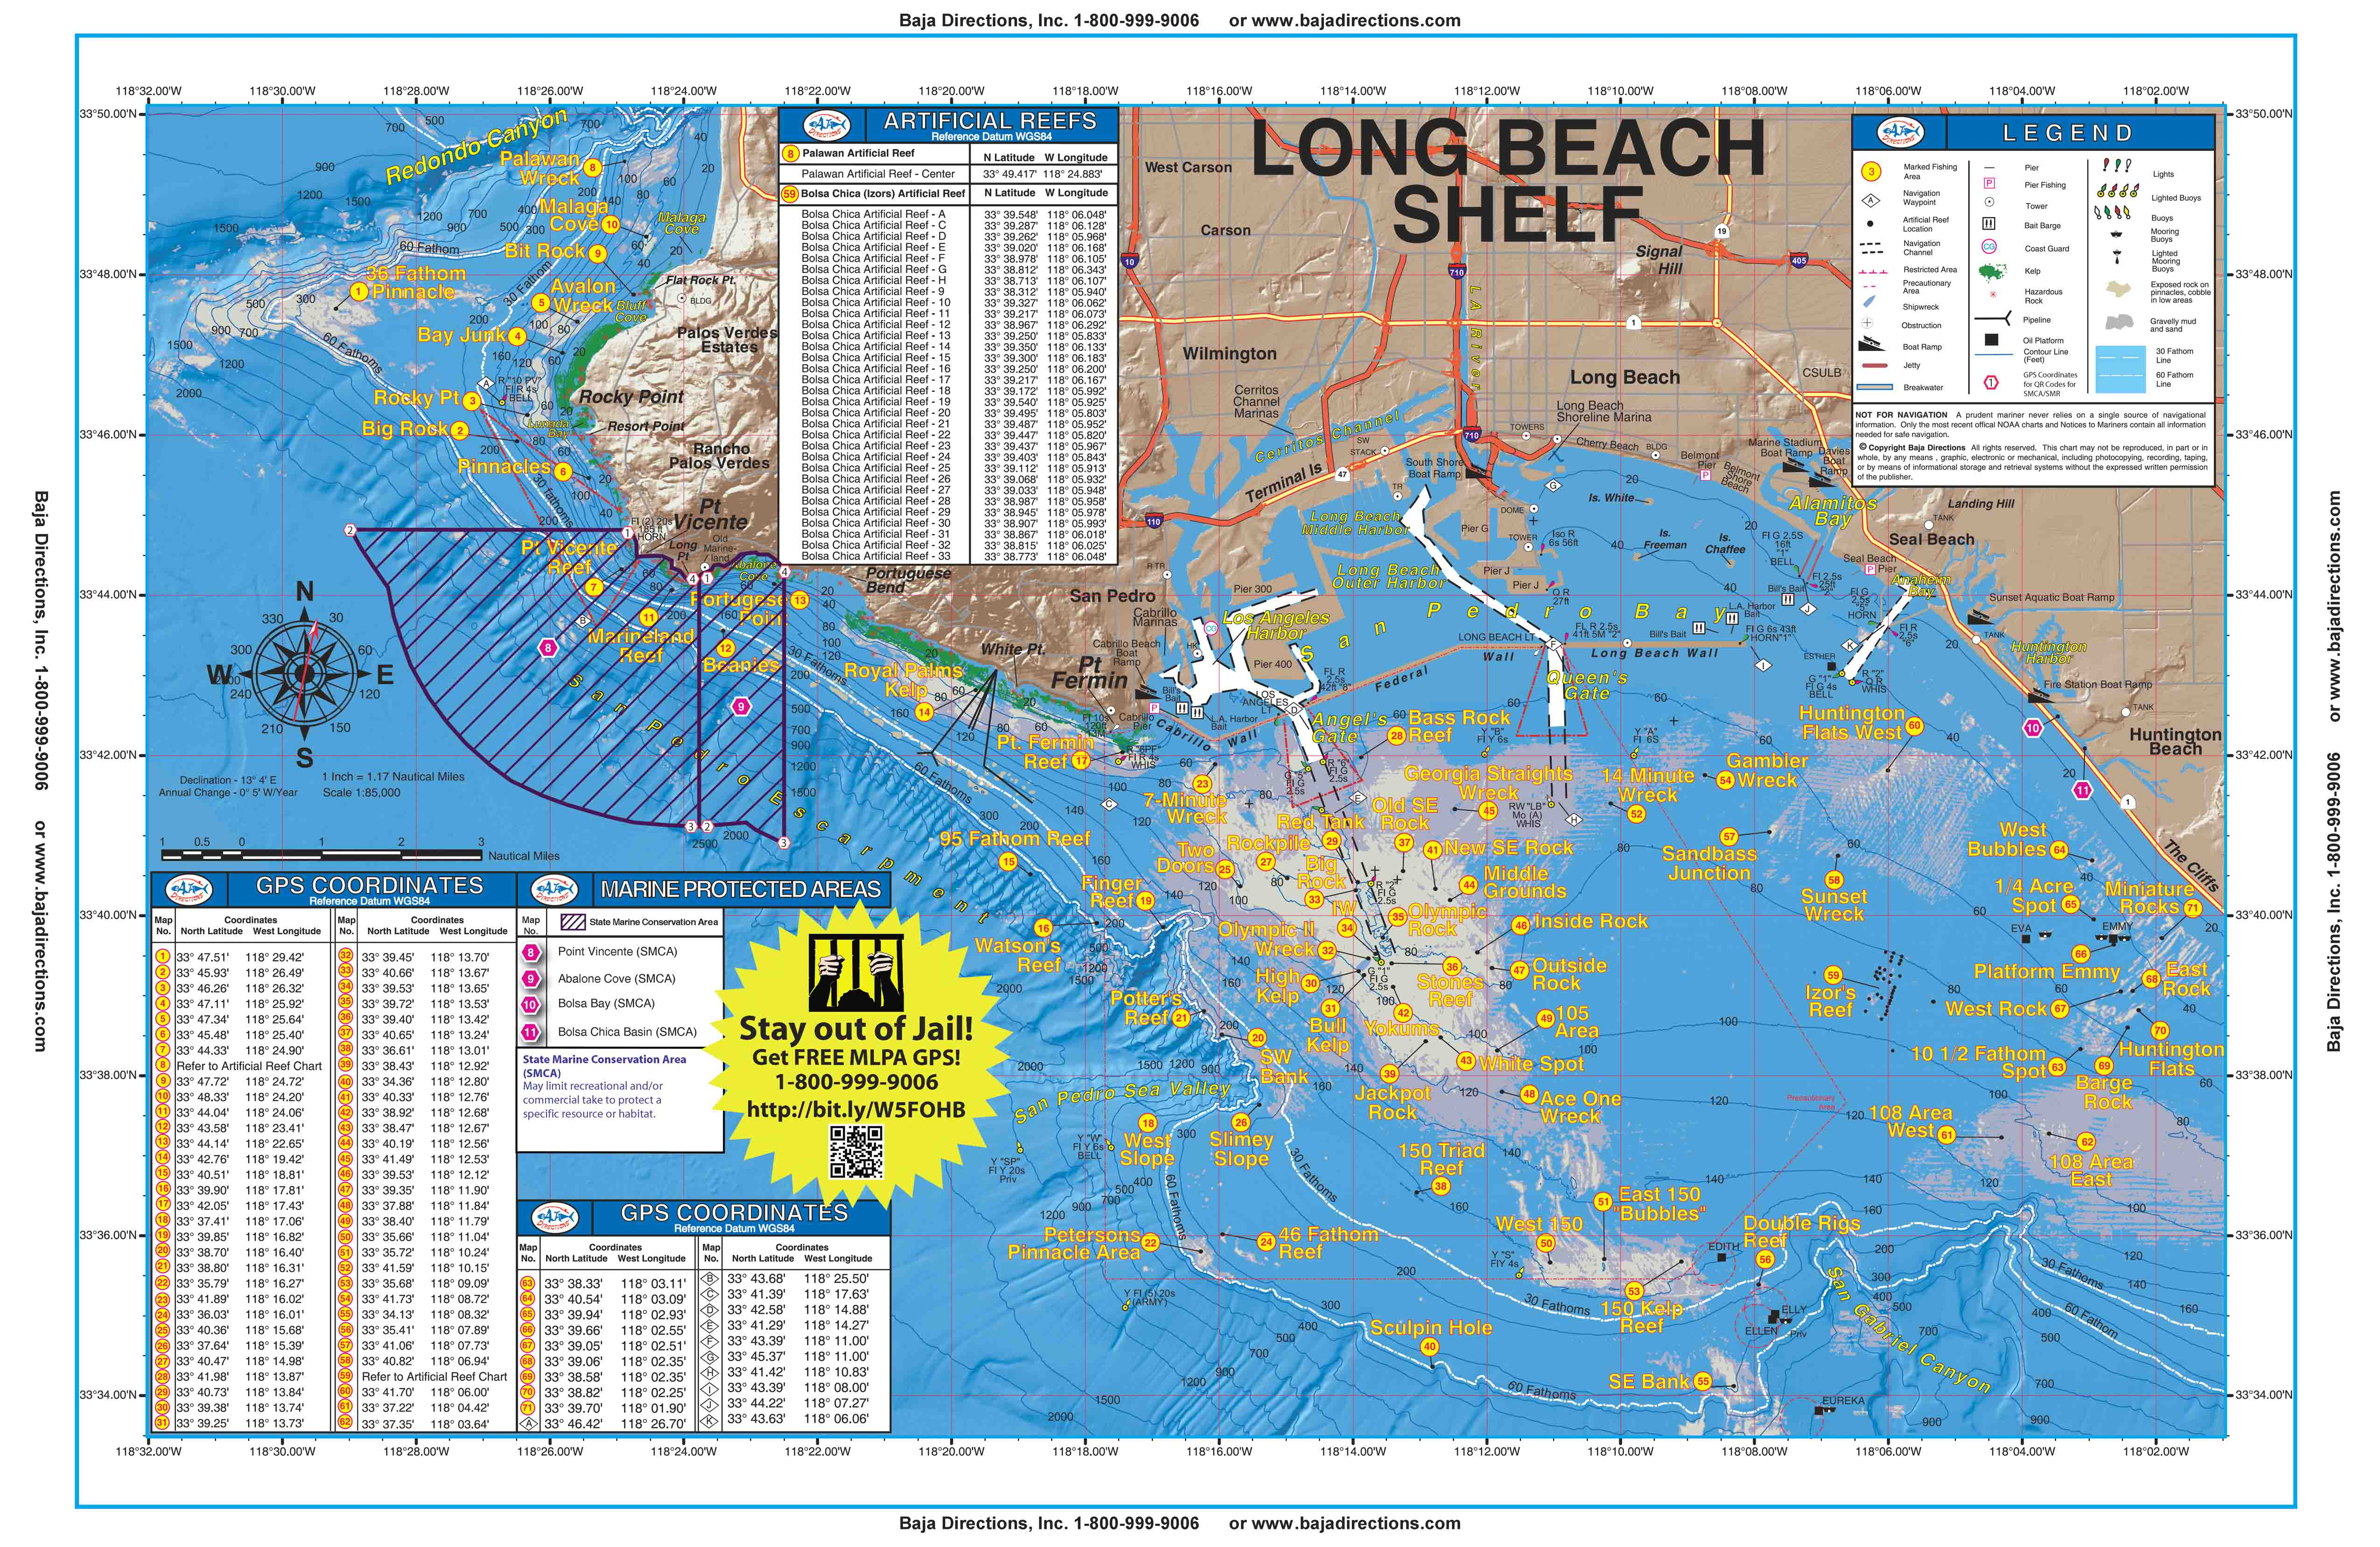 Long Beach Shelf - Baja Directions - Southern California Fishing Spots Map